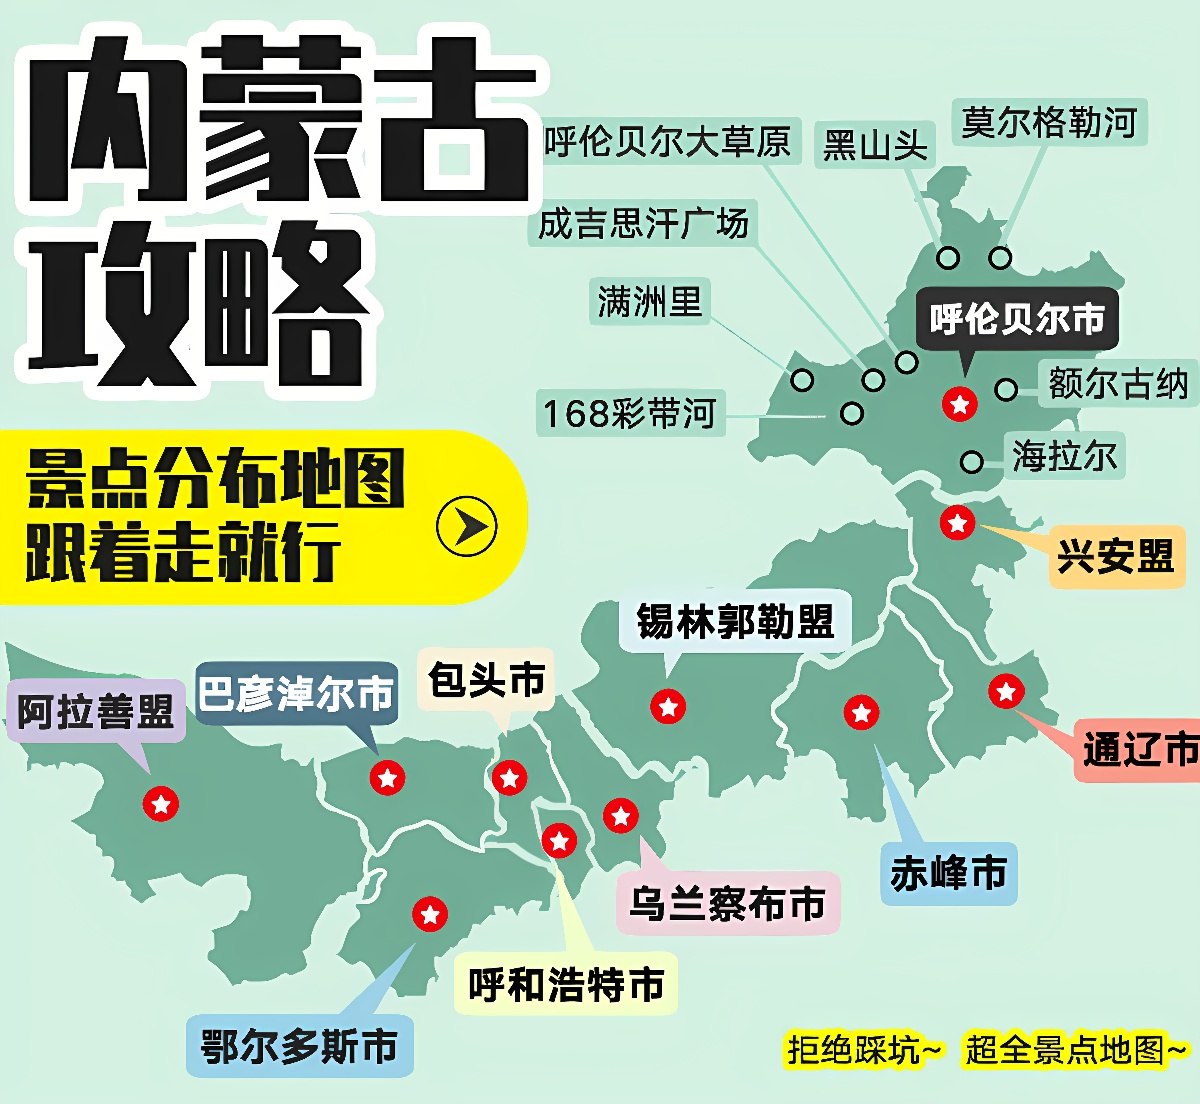 这张图片是一张含有中文文字的地图，上面标注了多个地点和连线，似乎展示了某种网络或路线分布。